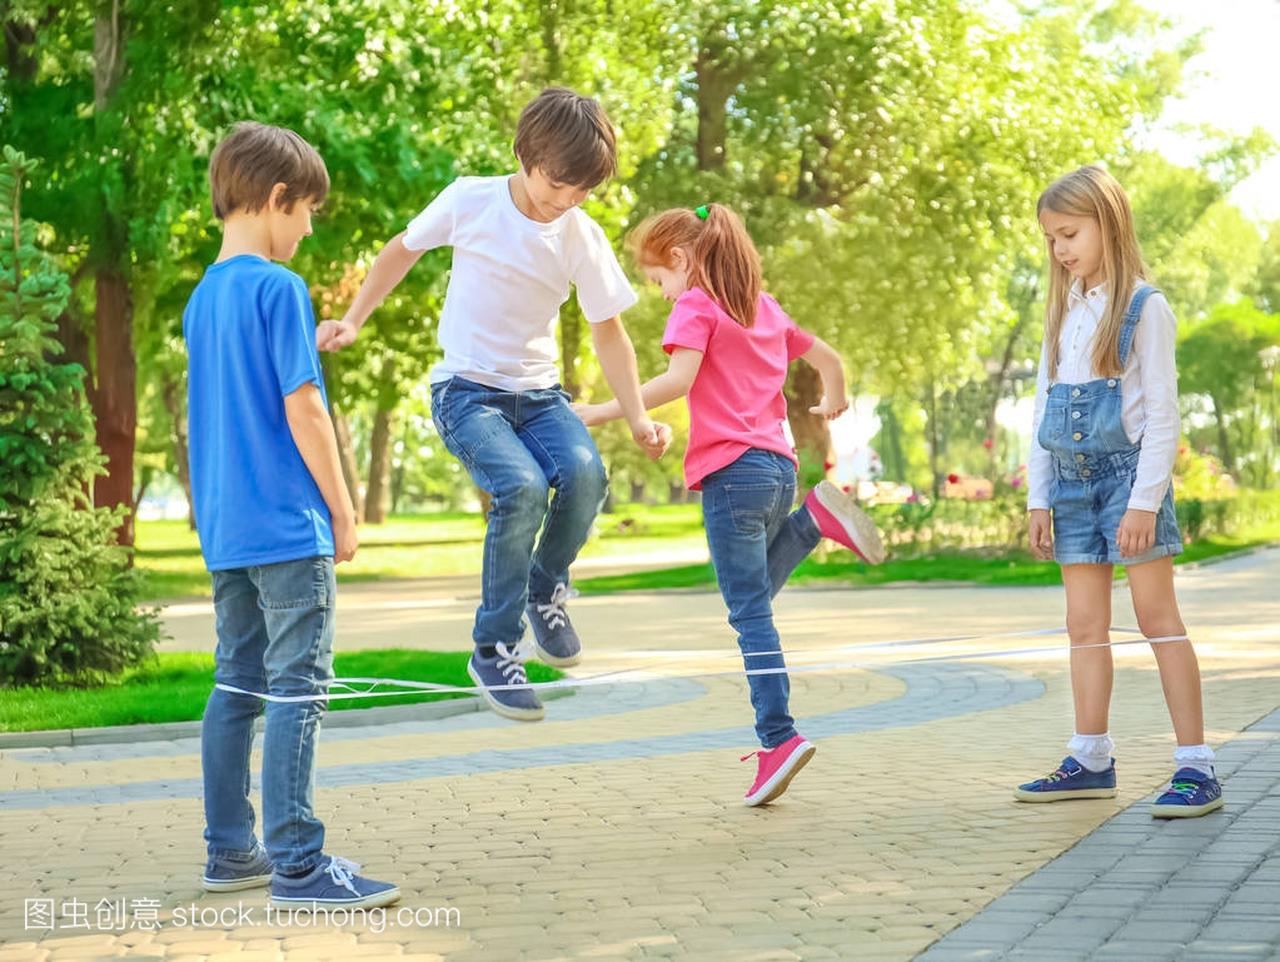 逗人喜爱的小孩子跳绳在公园